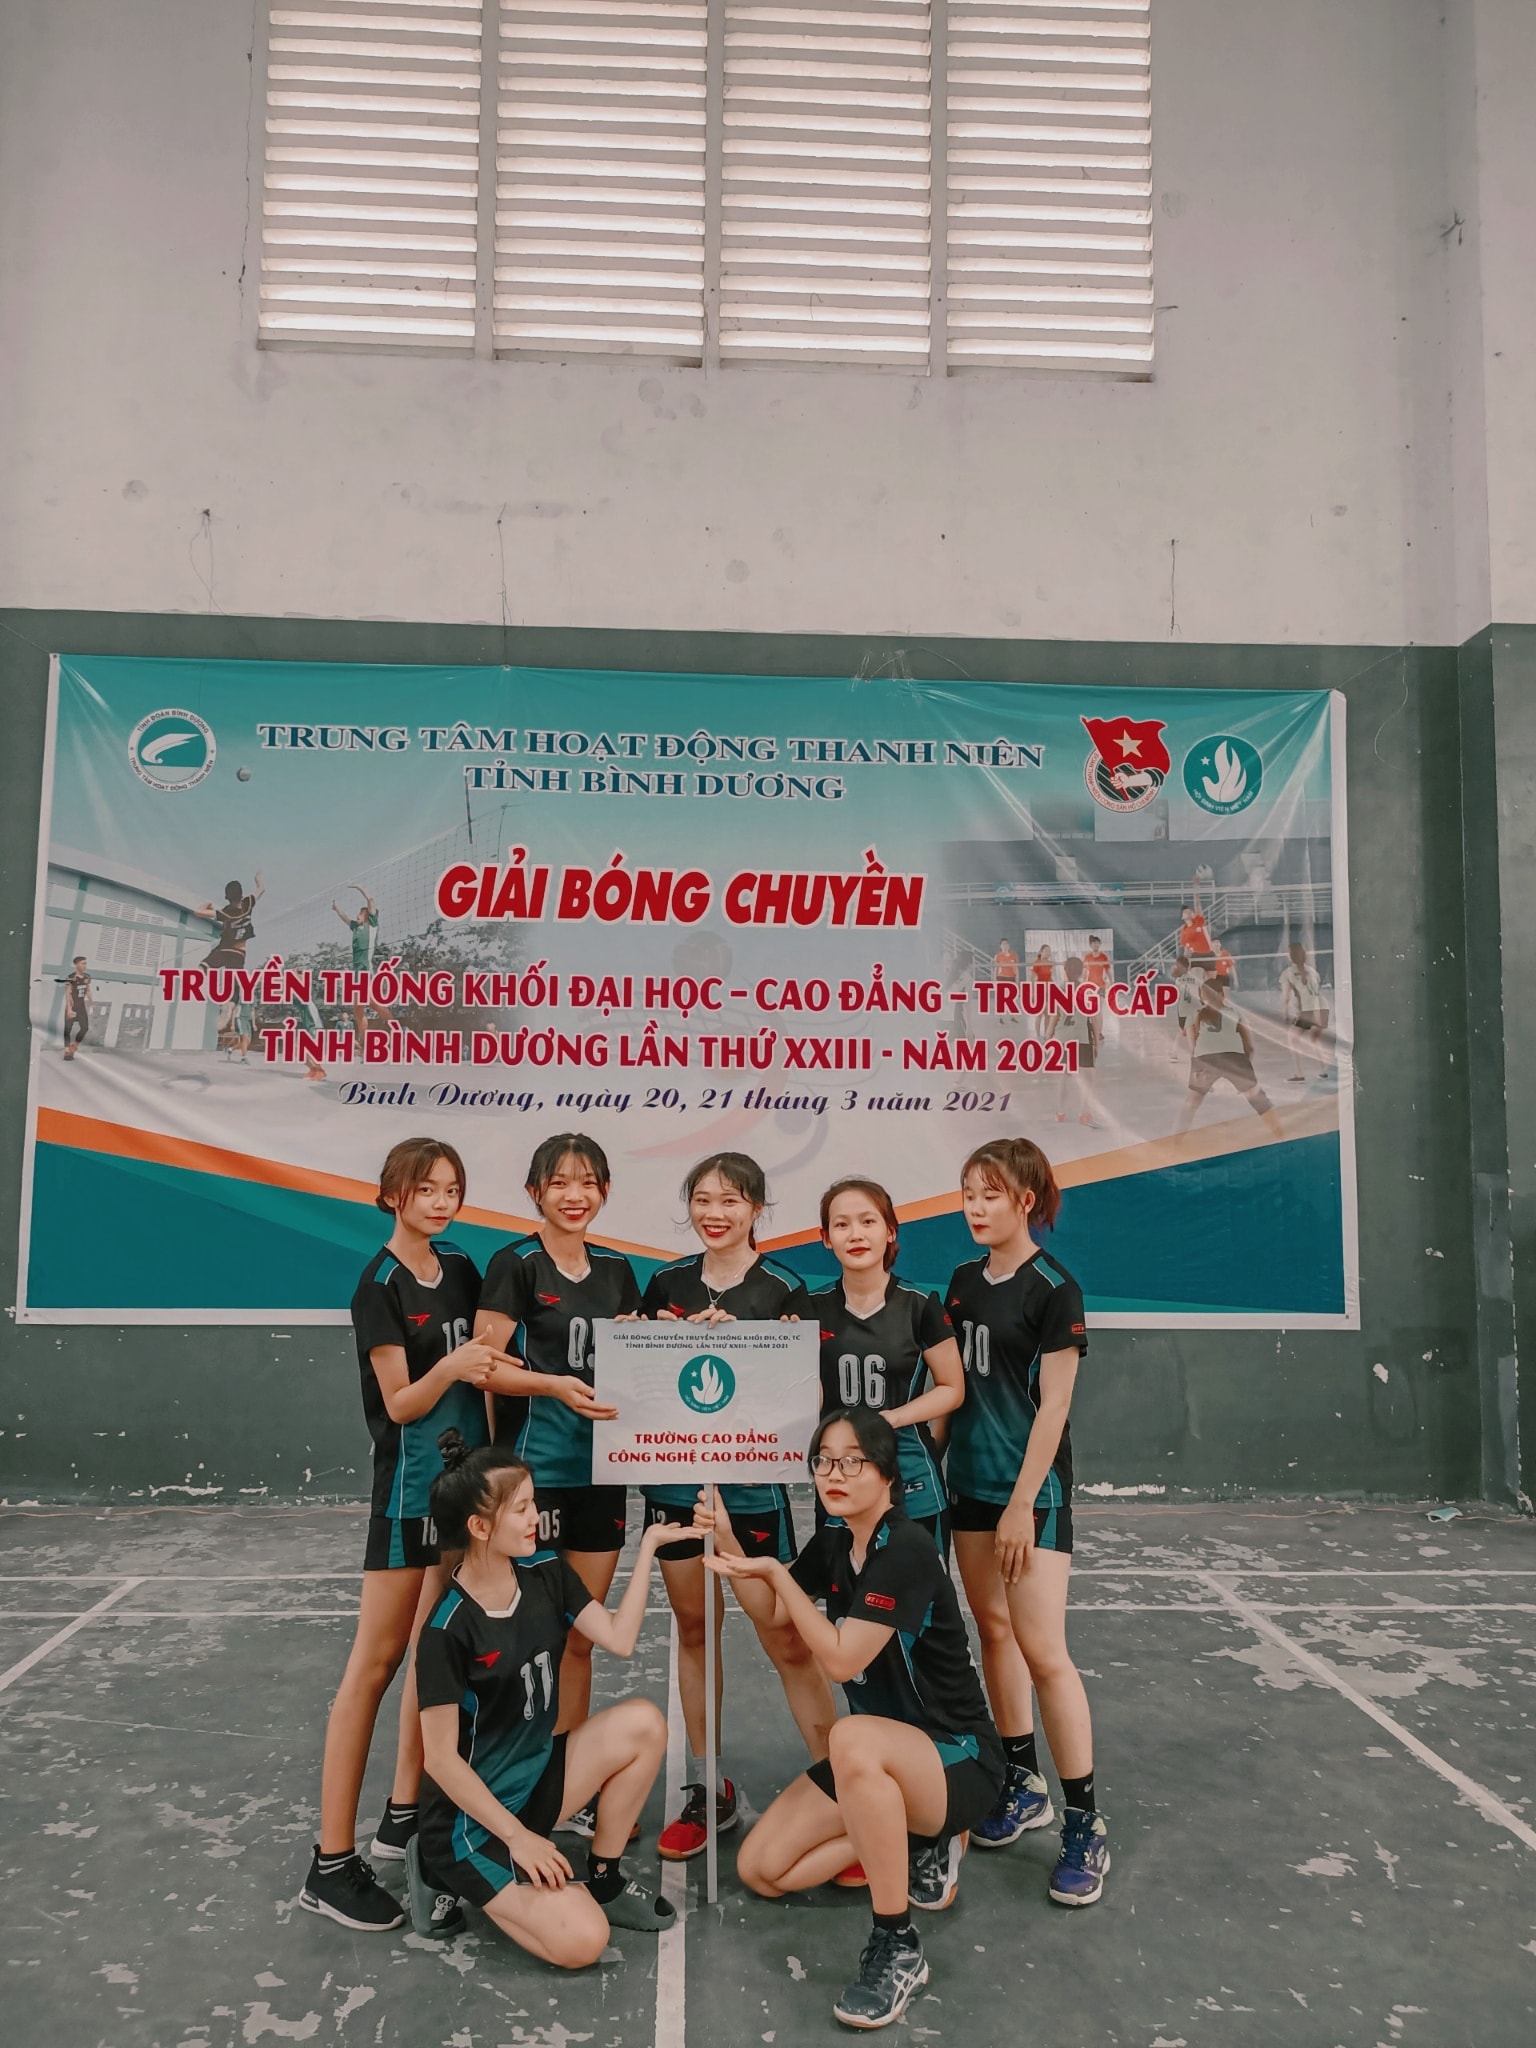 Đội nữ bóng chuyền dap đạt huy chương bạc giải bóng chuyền bình dương lần thứ xxiii